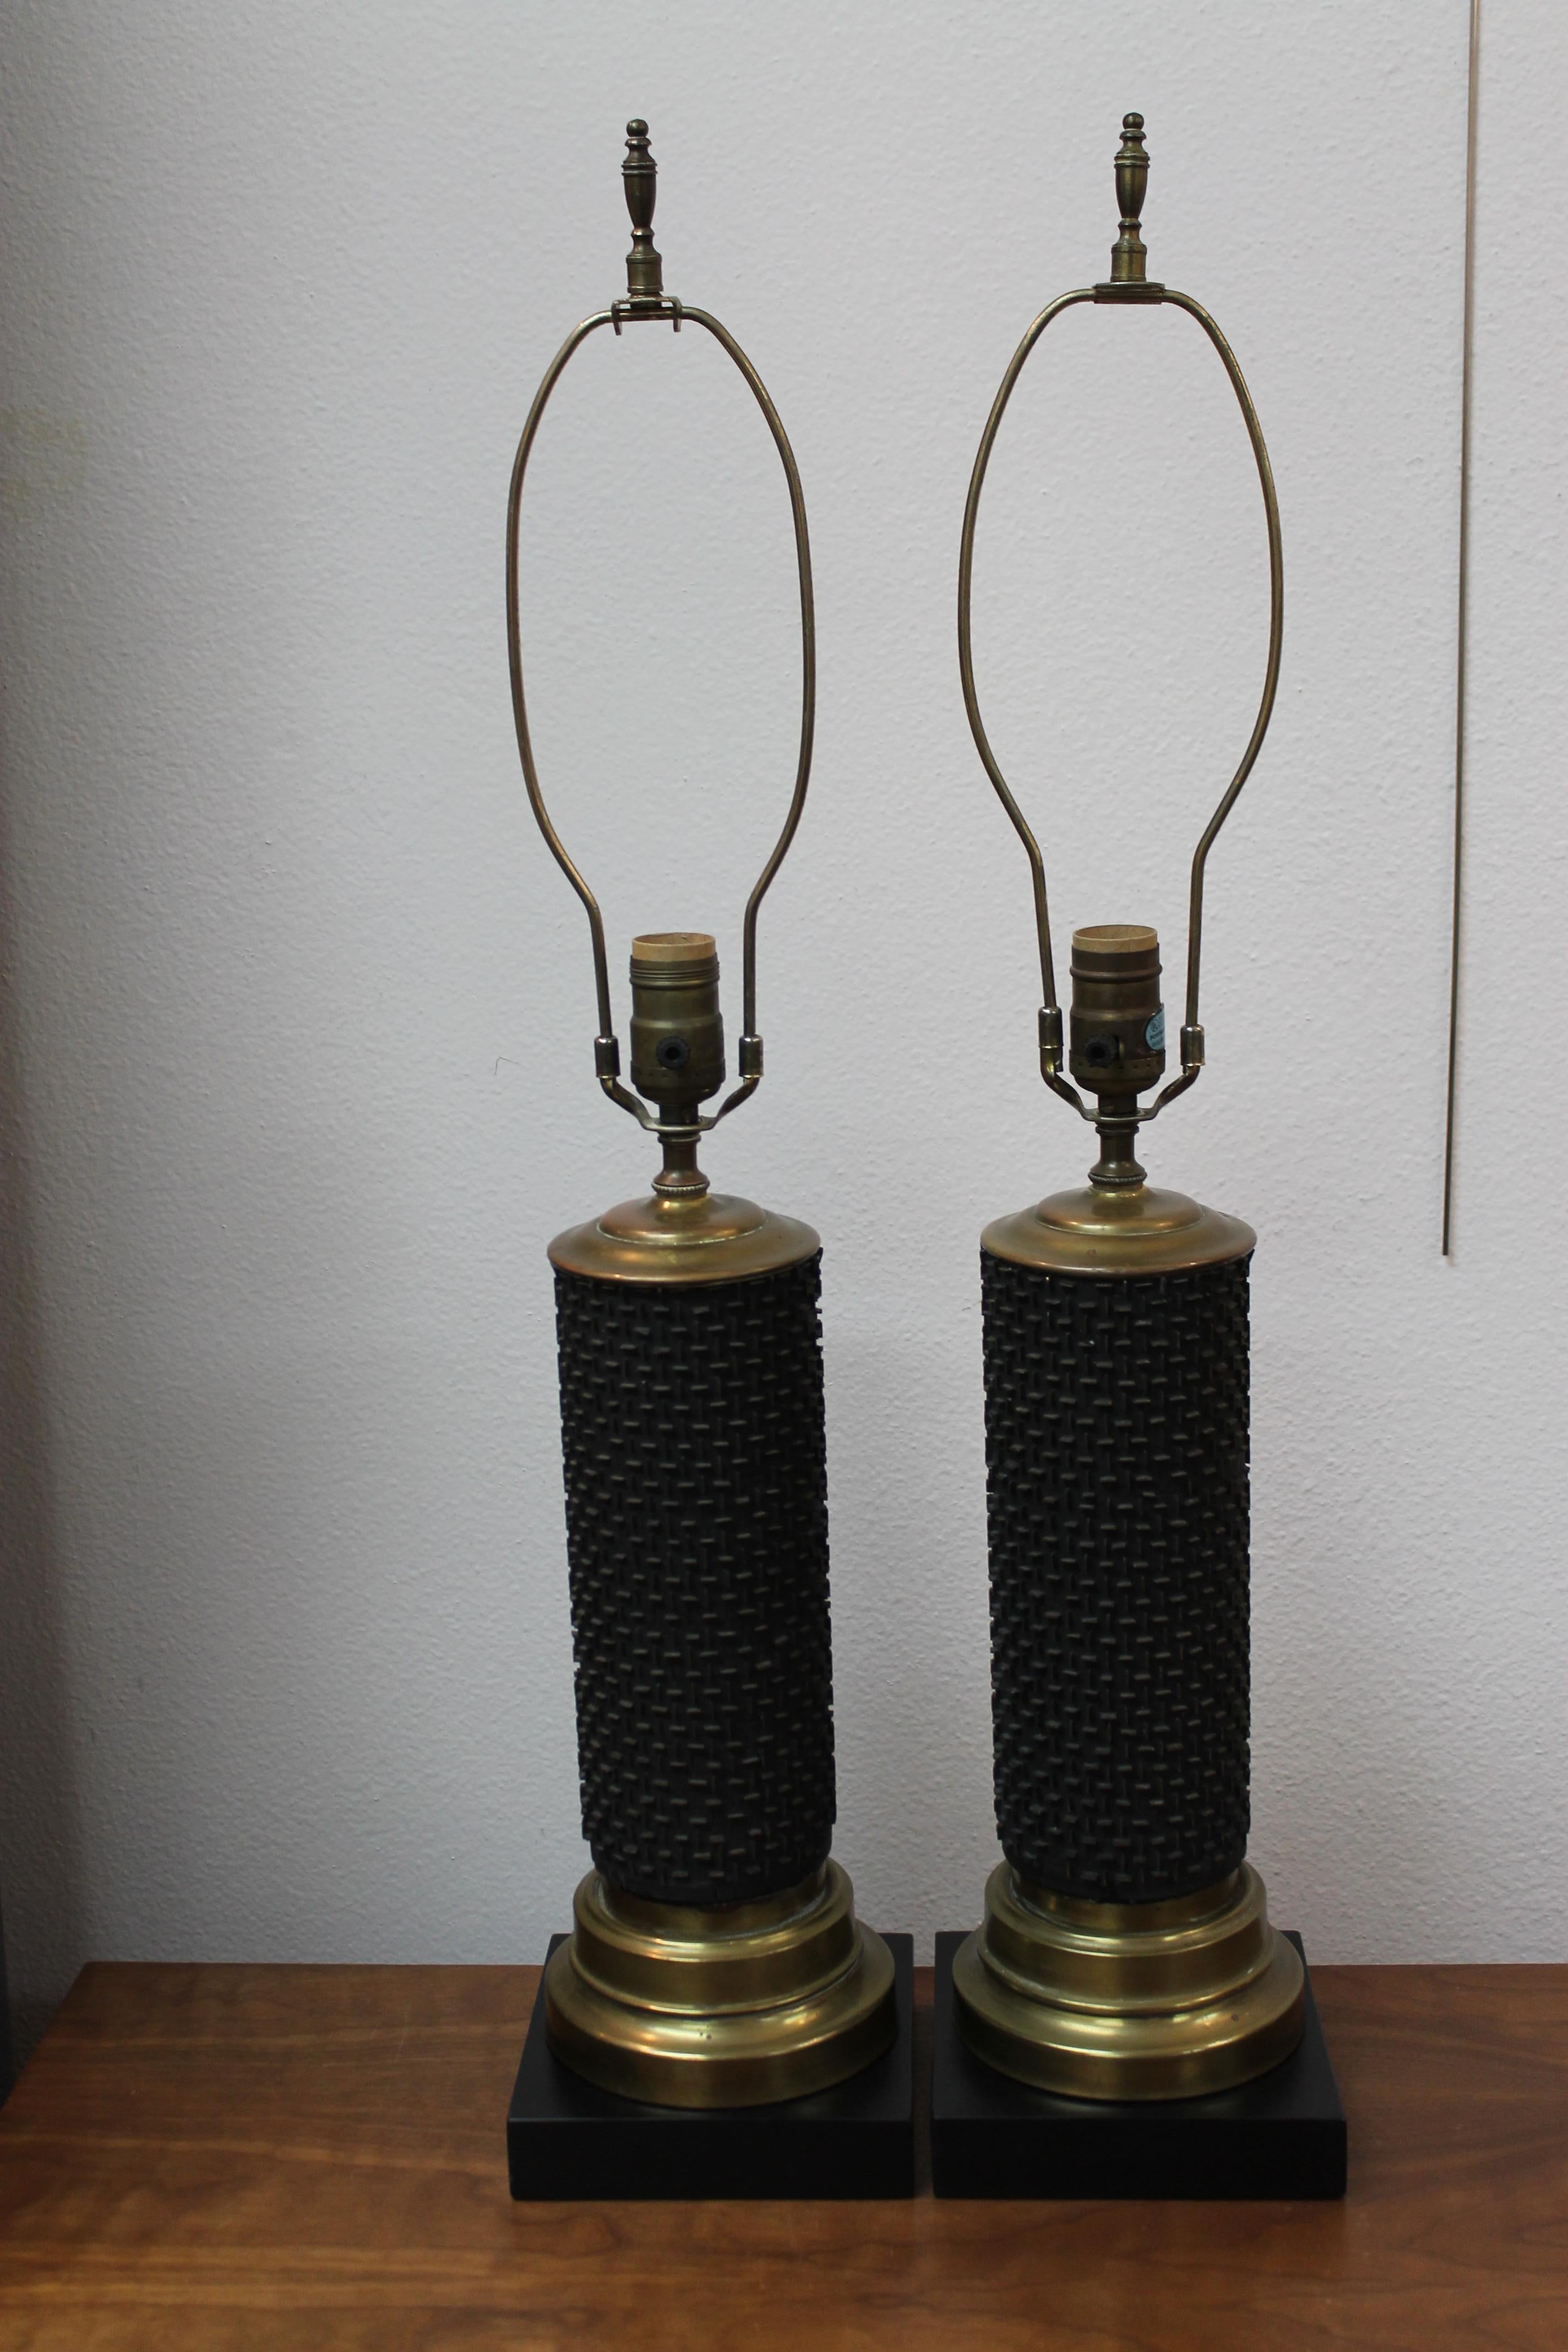 Paire de lampes à rouleau en papier peint des années 1950, noir mat avec des barres en laiton. Joli motif horizontal/vertical. Ces lampes mesurent 16